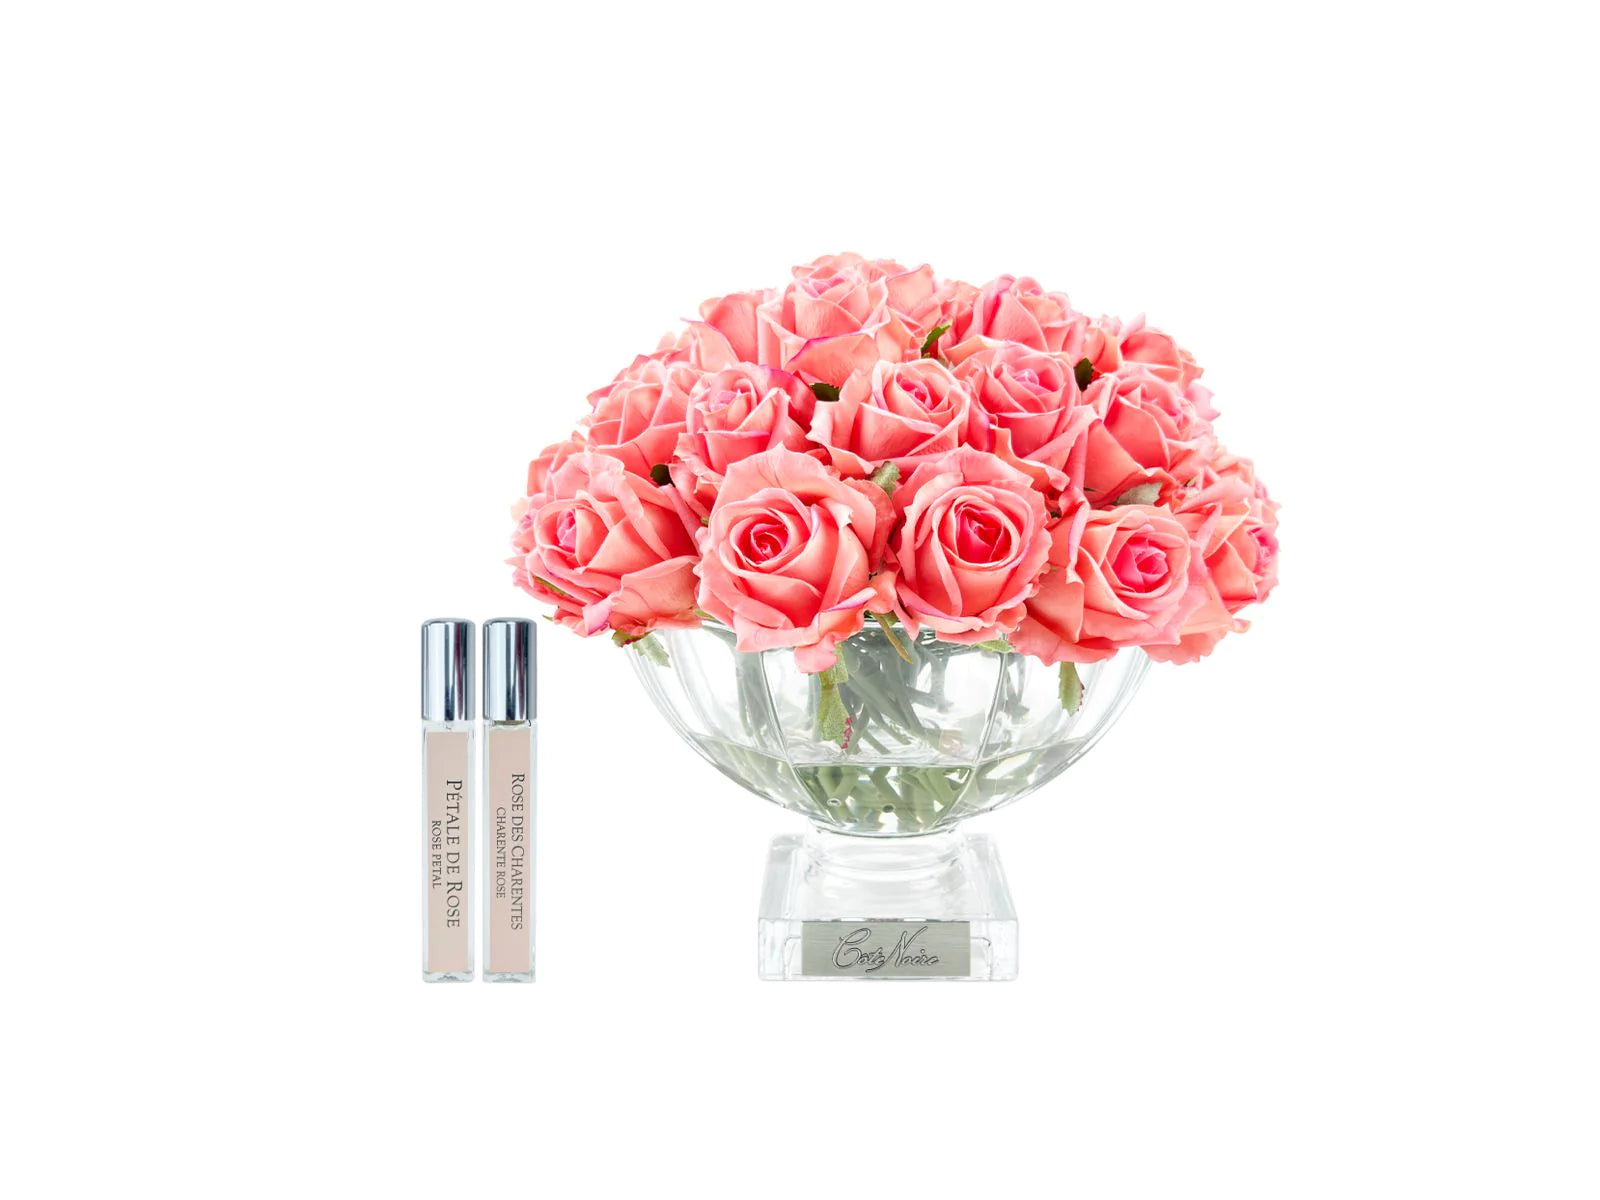 pfirsichweisse rosen in nobler glasvase neben zwei parfumsprays. weisser hintergrund